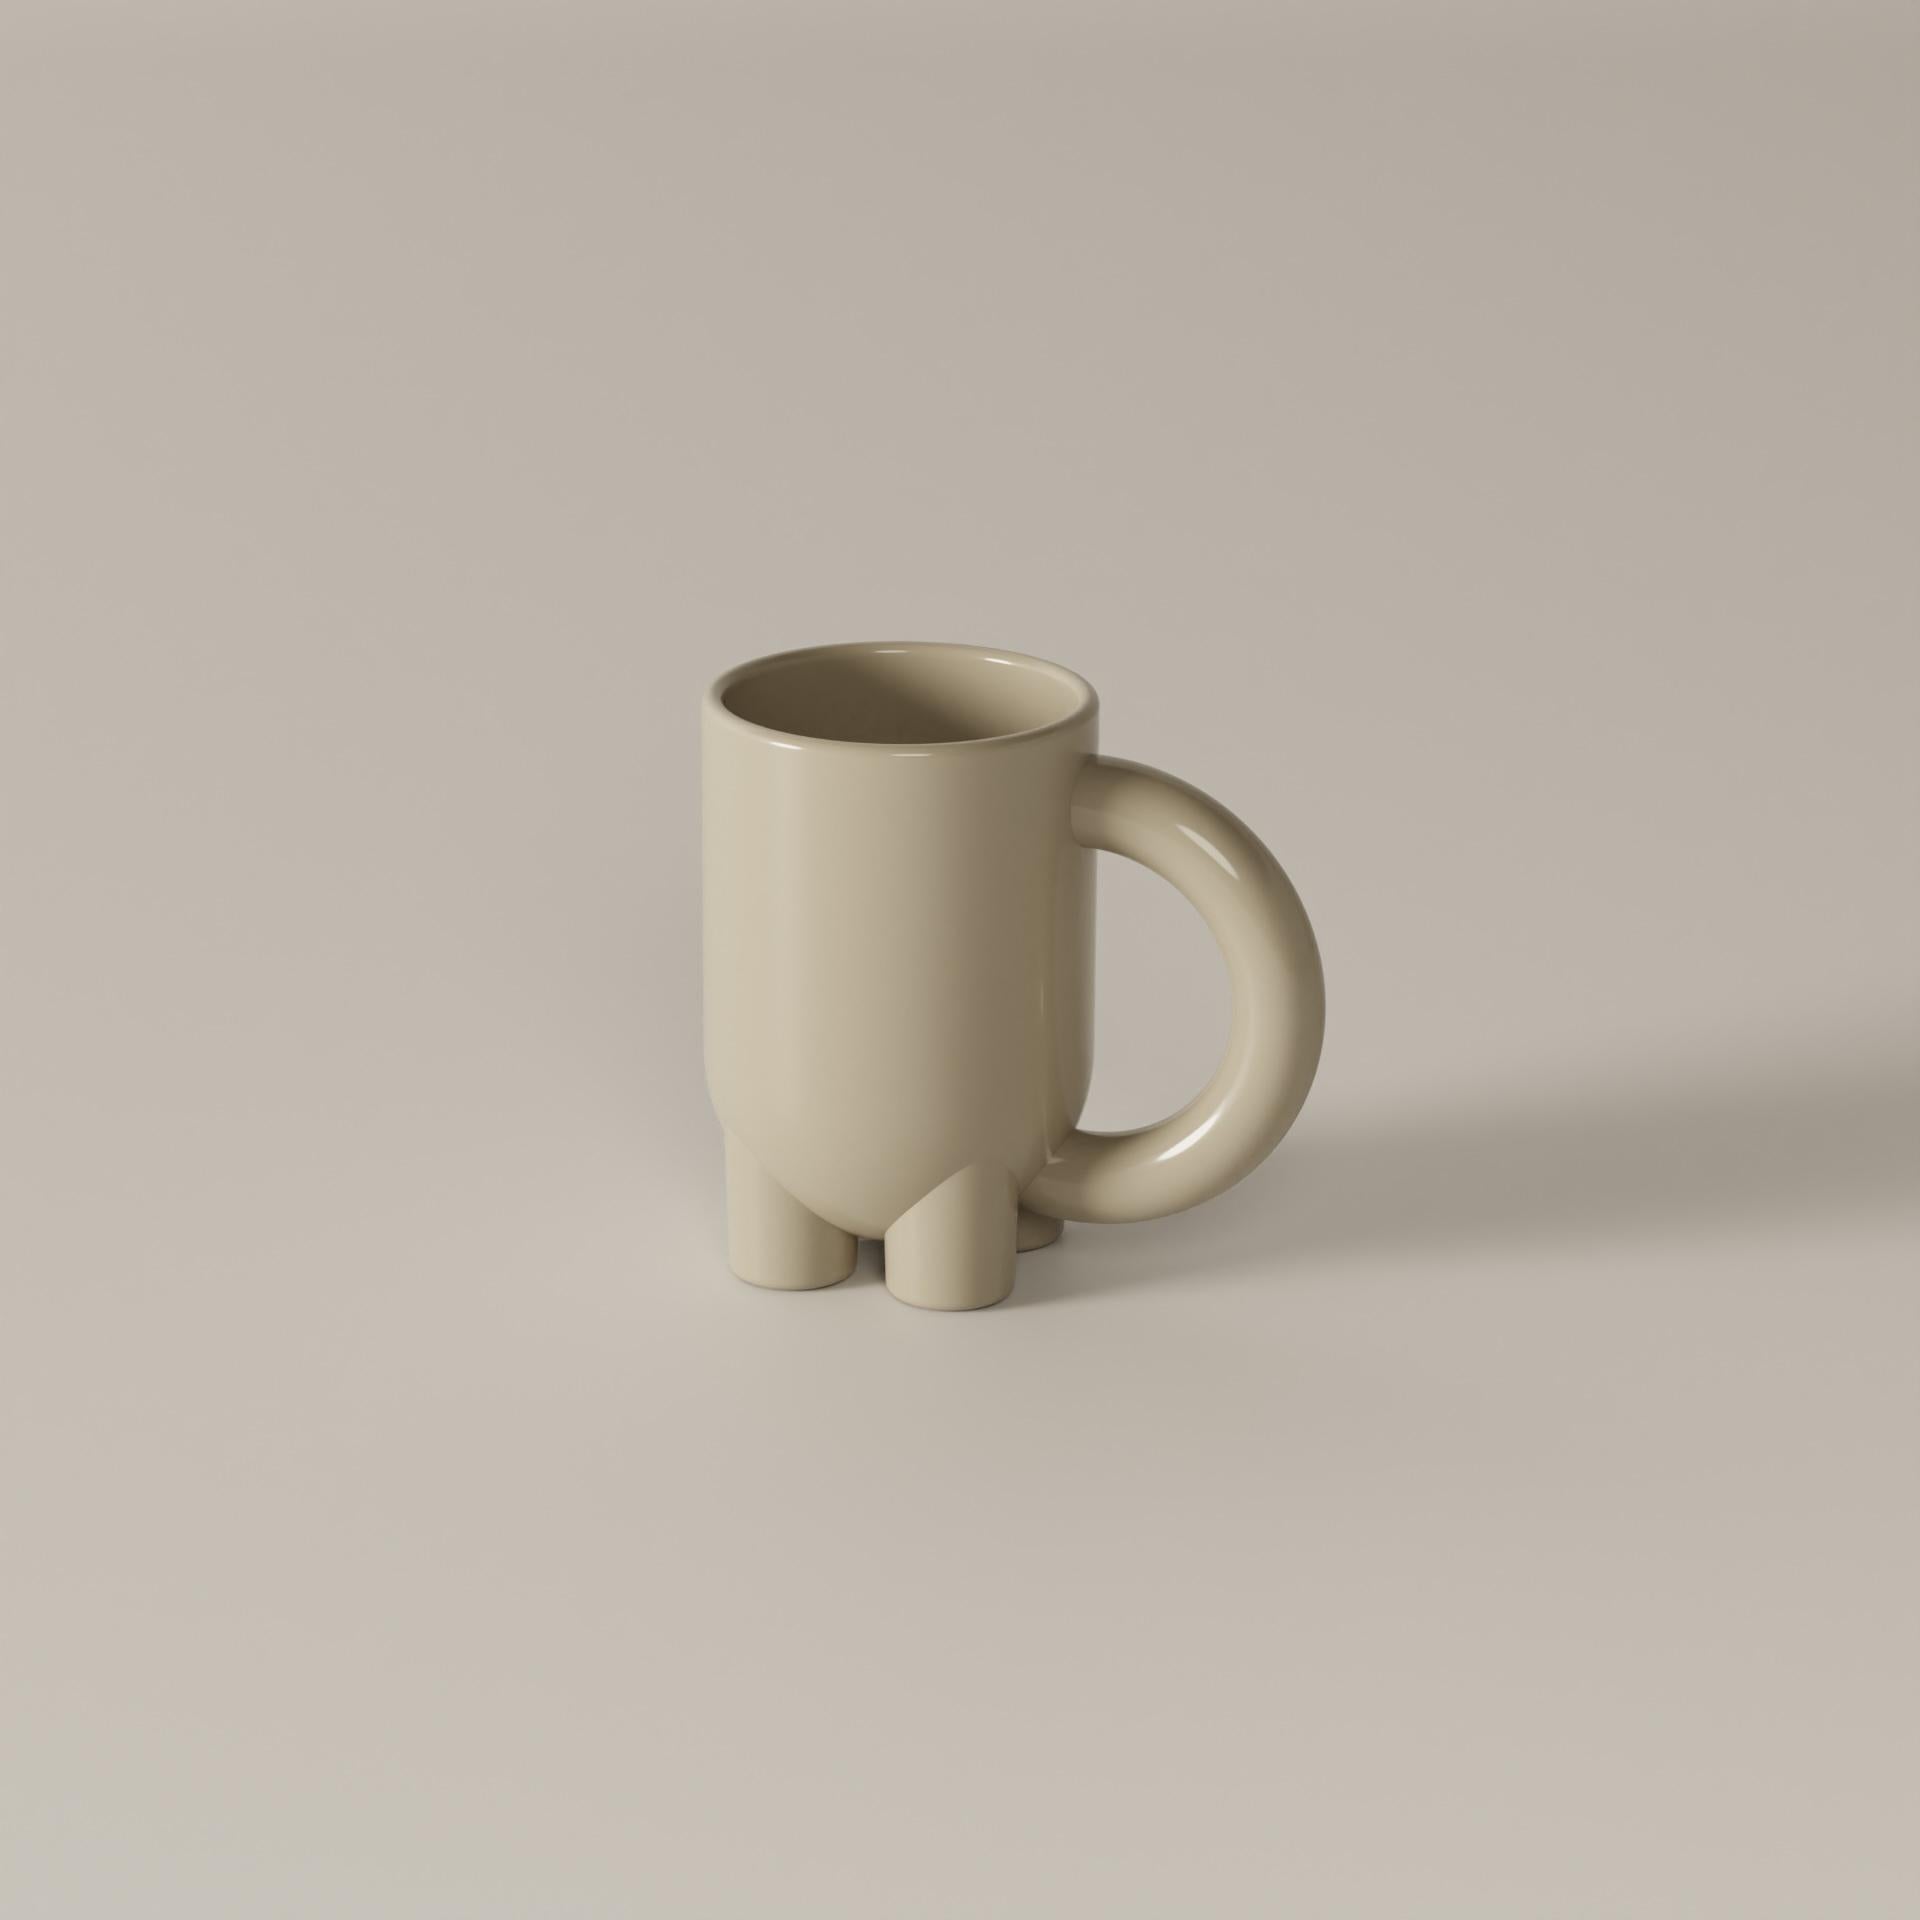 Diese hohe Tasse aus Steingut ist von den Kaffeetraditionen Italiens und des Irans inspiriert und hat einen modernen Geist. Einfache geometrische Formen, klare Linien und ein einzigartiges Design machen mUUUUg sowohl zu einem dekorativen Objekt als